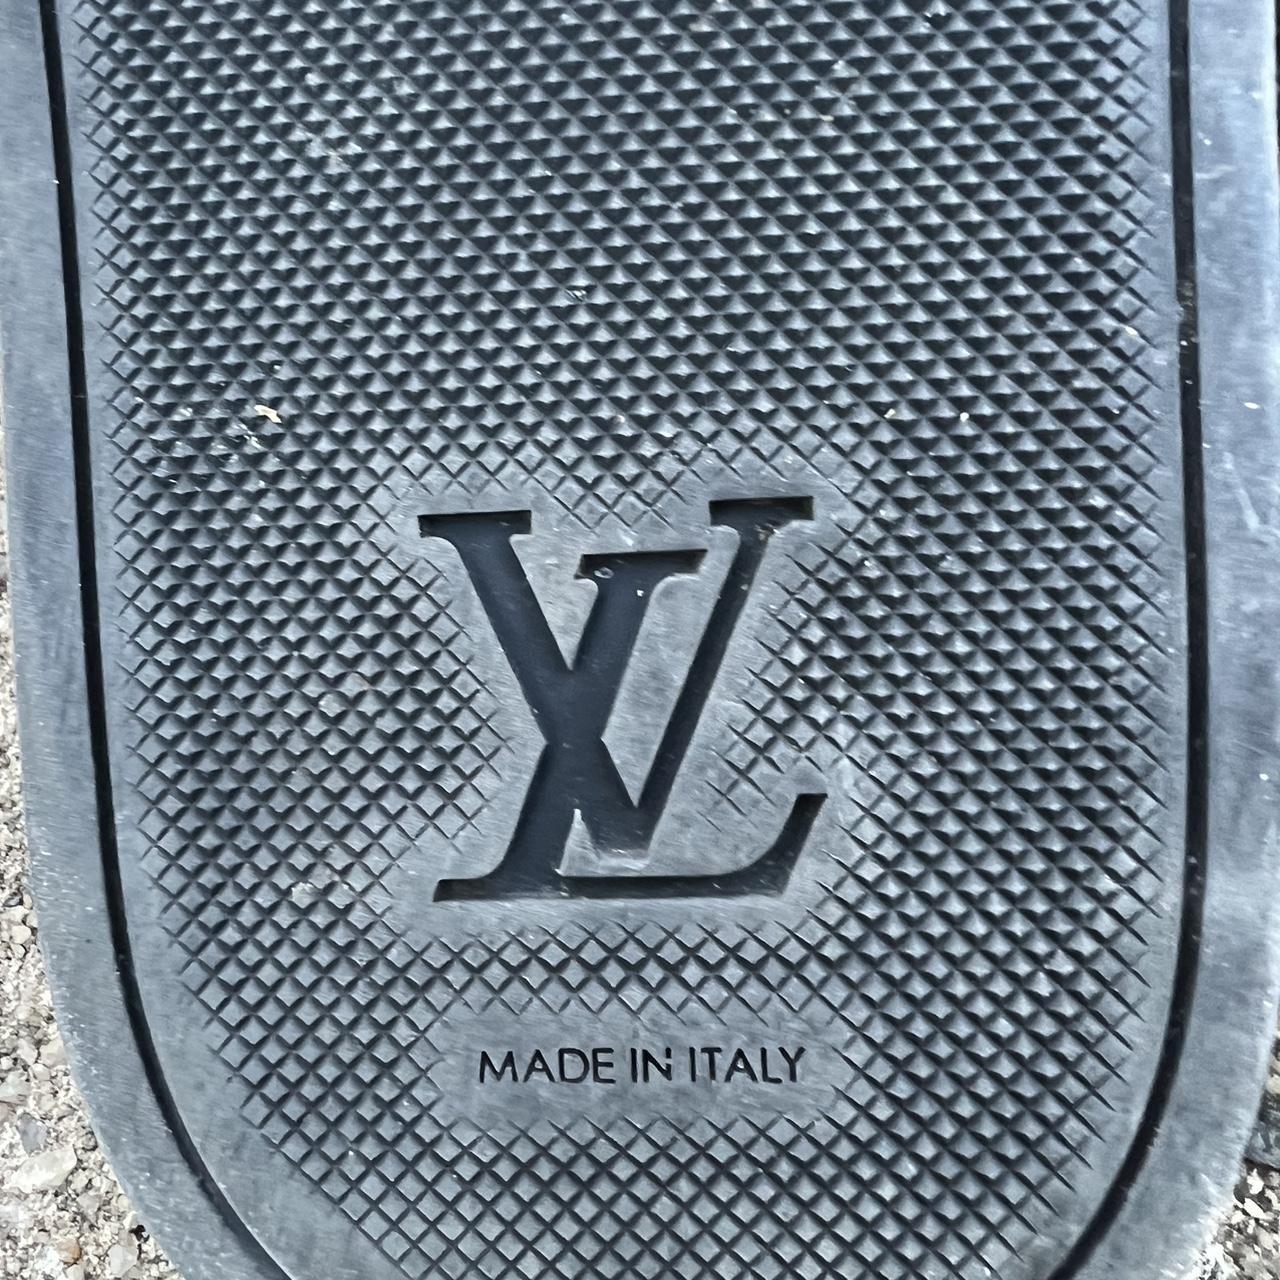 Louis Vuitton slides size uk 8 slippers authentic - Depop